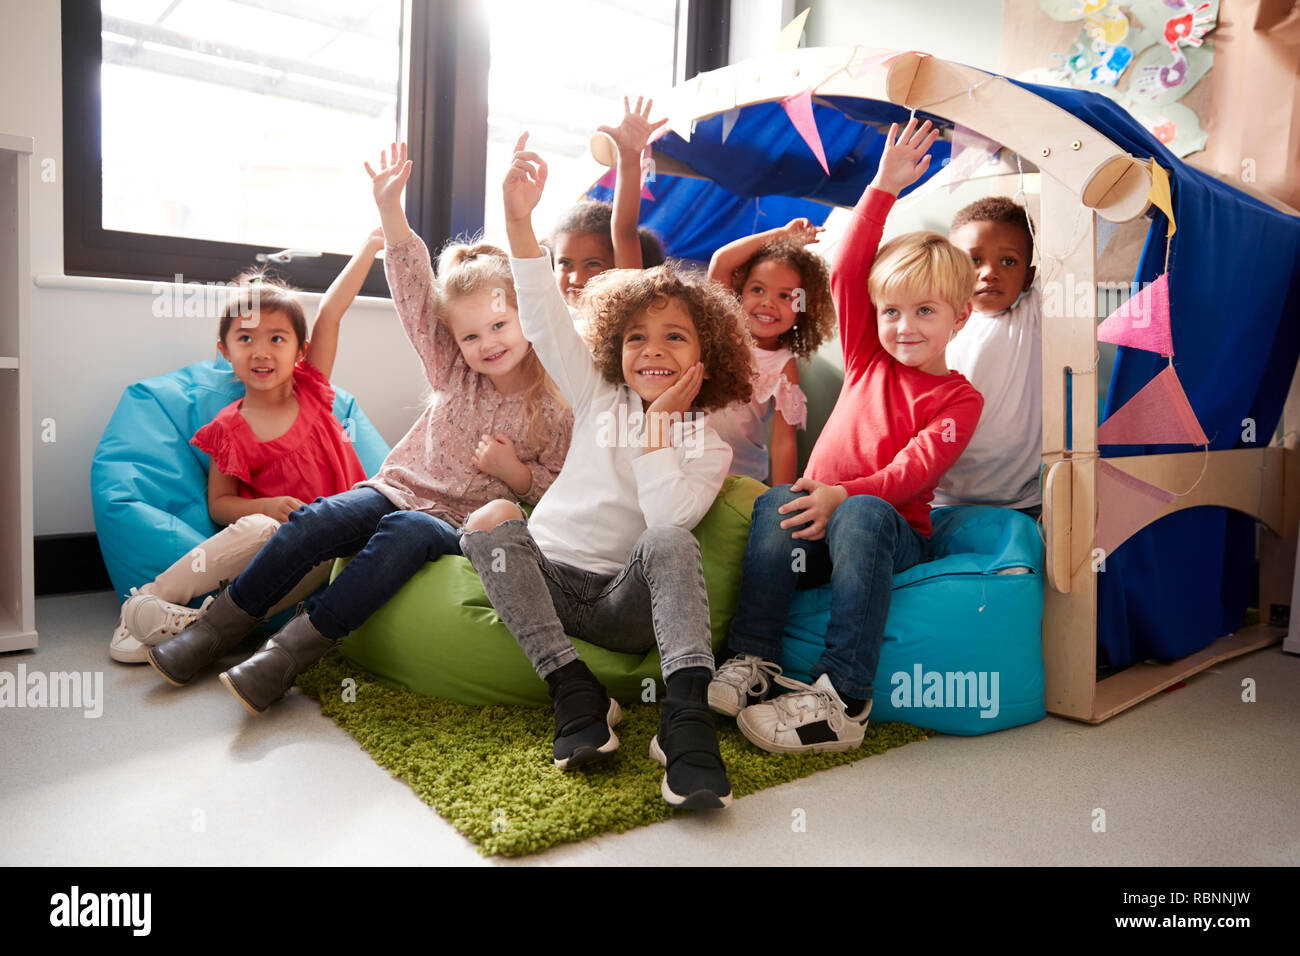 Un grupo multiétnico de escuela infantil niños sentados en sacos de frijoles en un confortable rincón del aula, levantar la mano para contestar una pregunta, bajo ángulo, cerrar Foto de stock